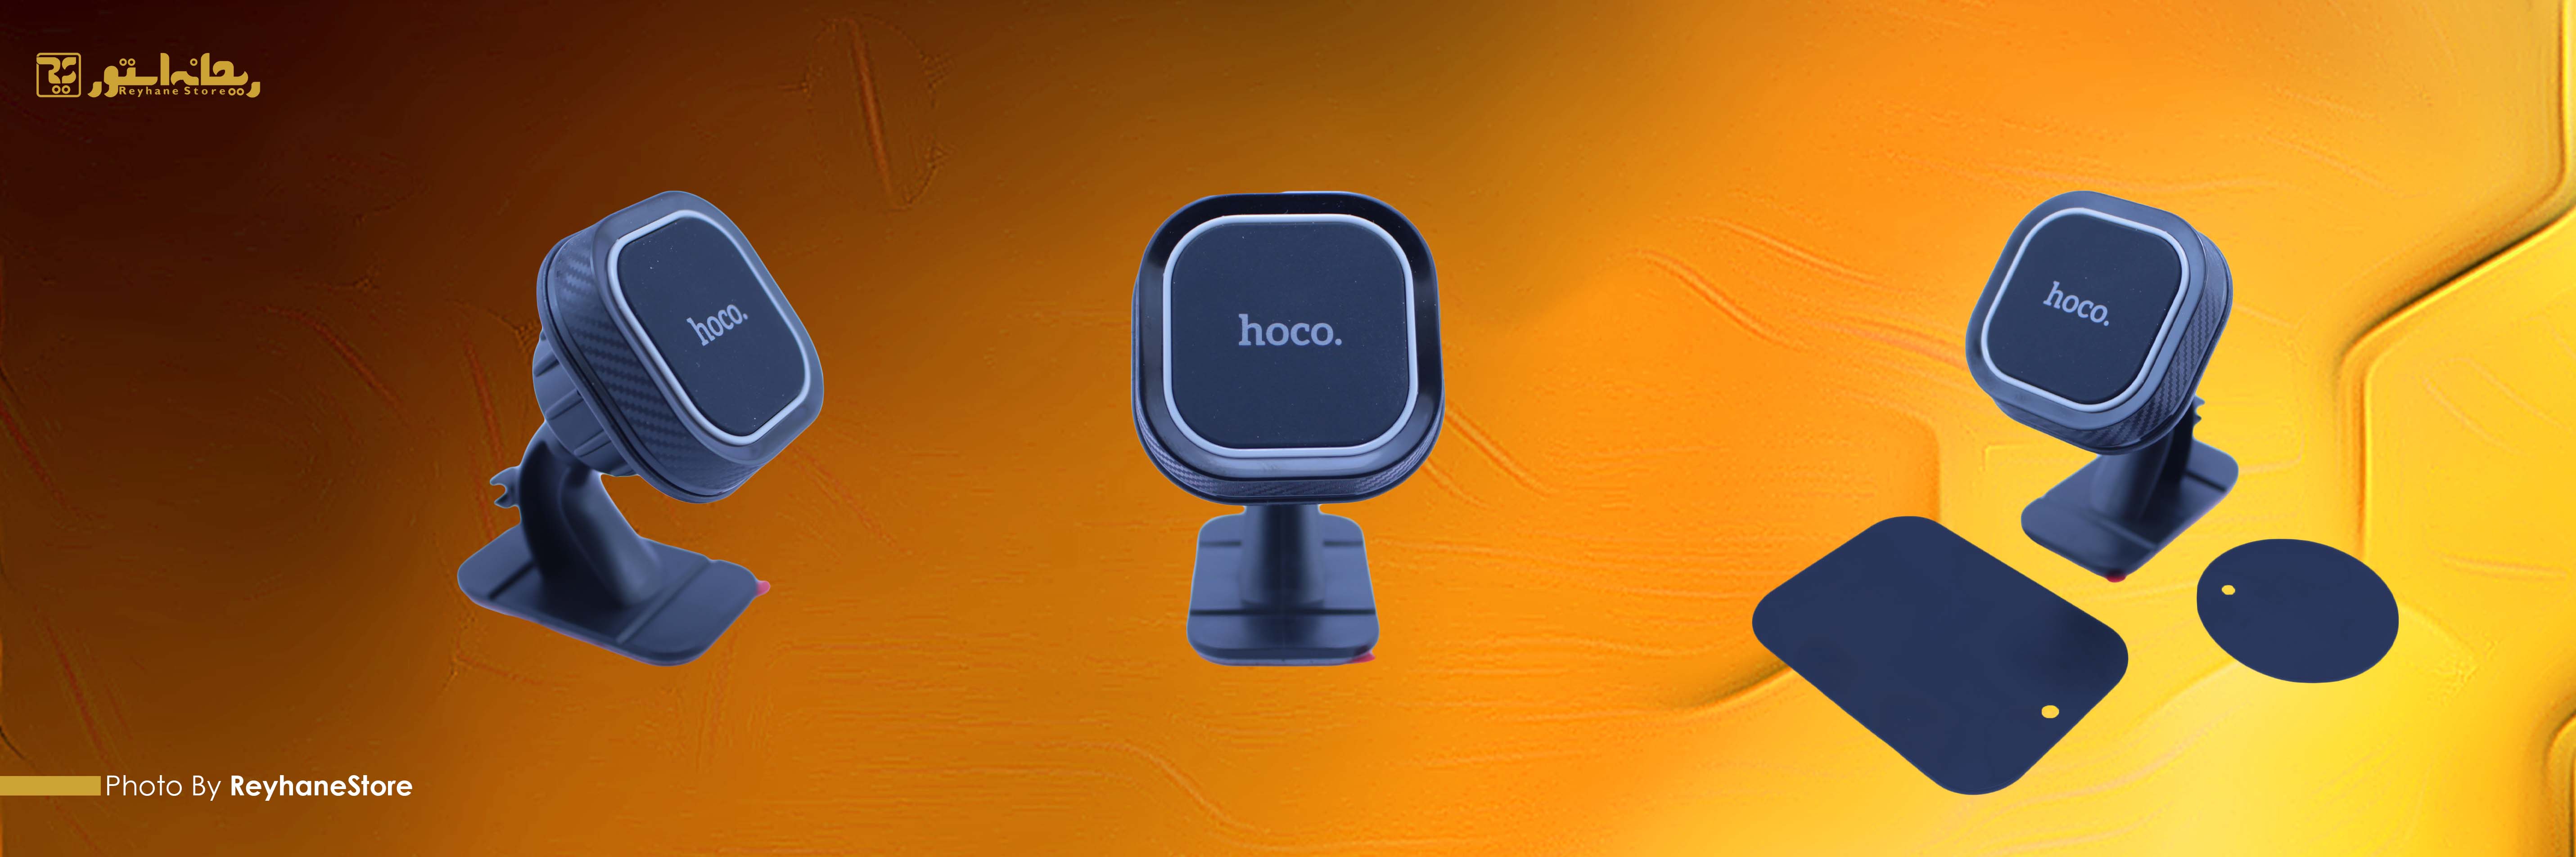 پایه نگهدارنده موبایل هوکو CA53 ترکیبی از  پلاستیک ABS ، سیلیکون و پلی کربنات می باشد. این محصول از طریق پایه به کف داشبورد خودرو، میز کار یا سطوح صاف خودرو متصل می شود. تلفن همراه